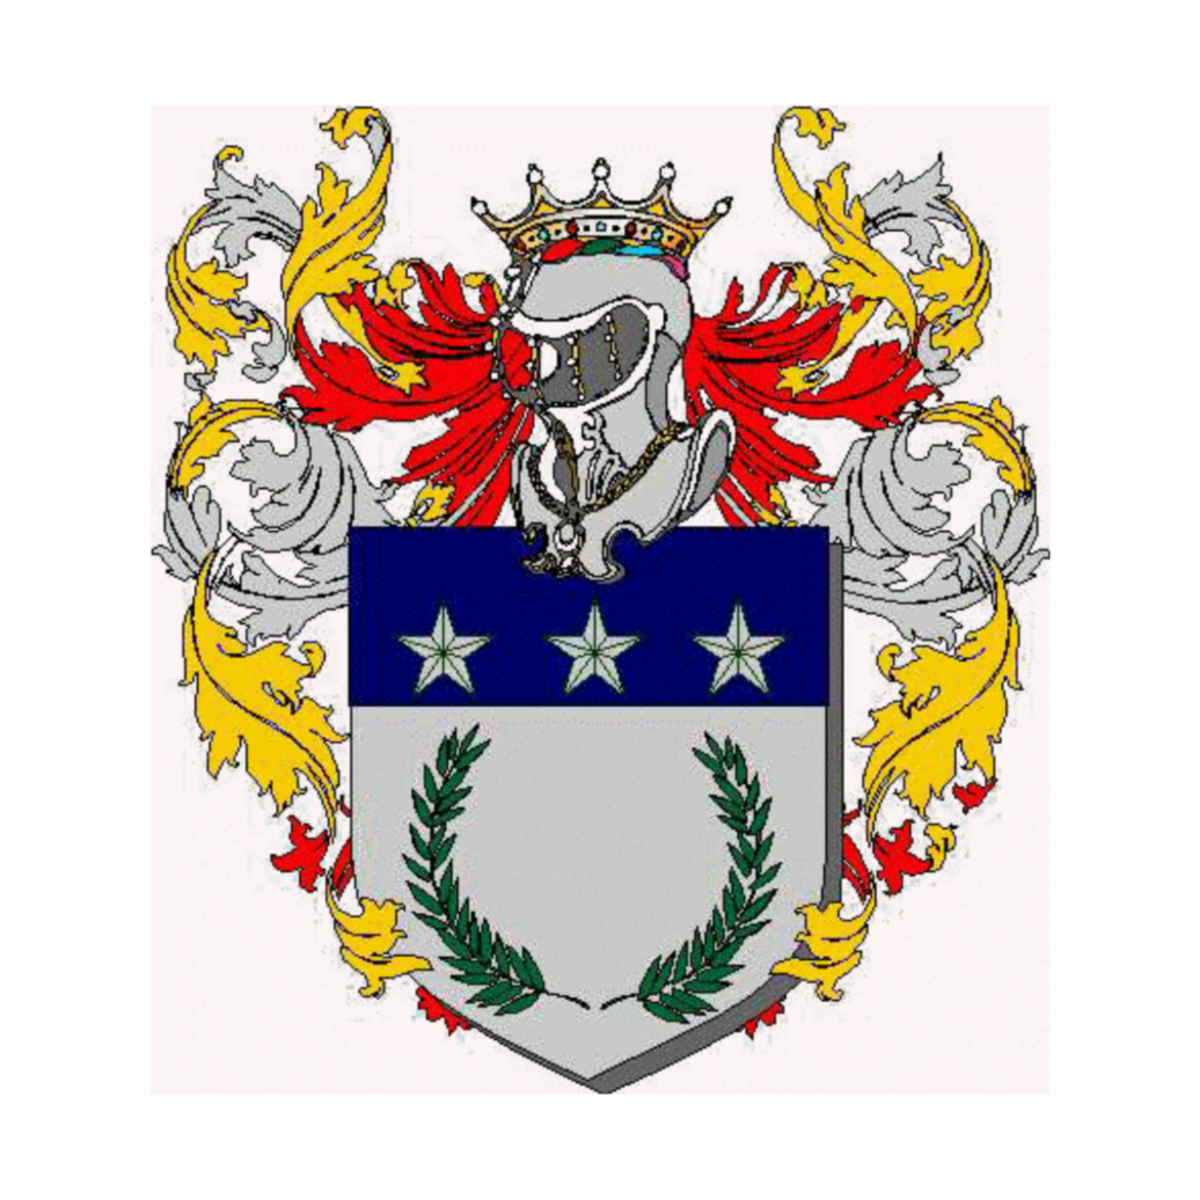 Coat of arms of familyCerruti